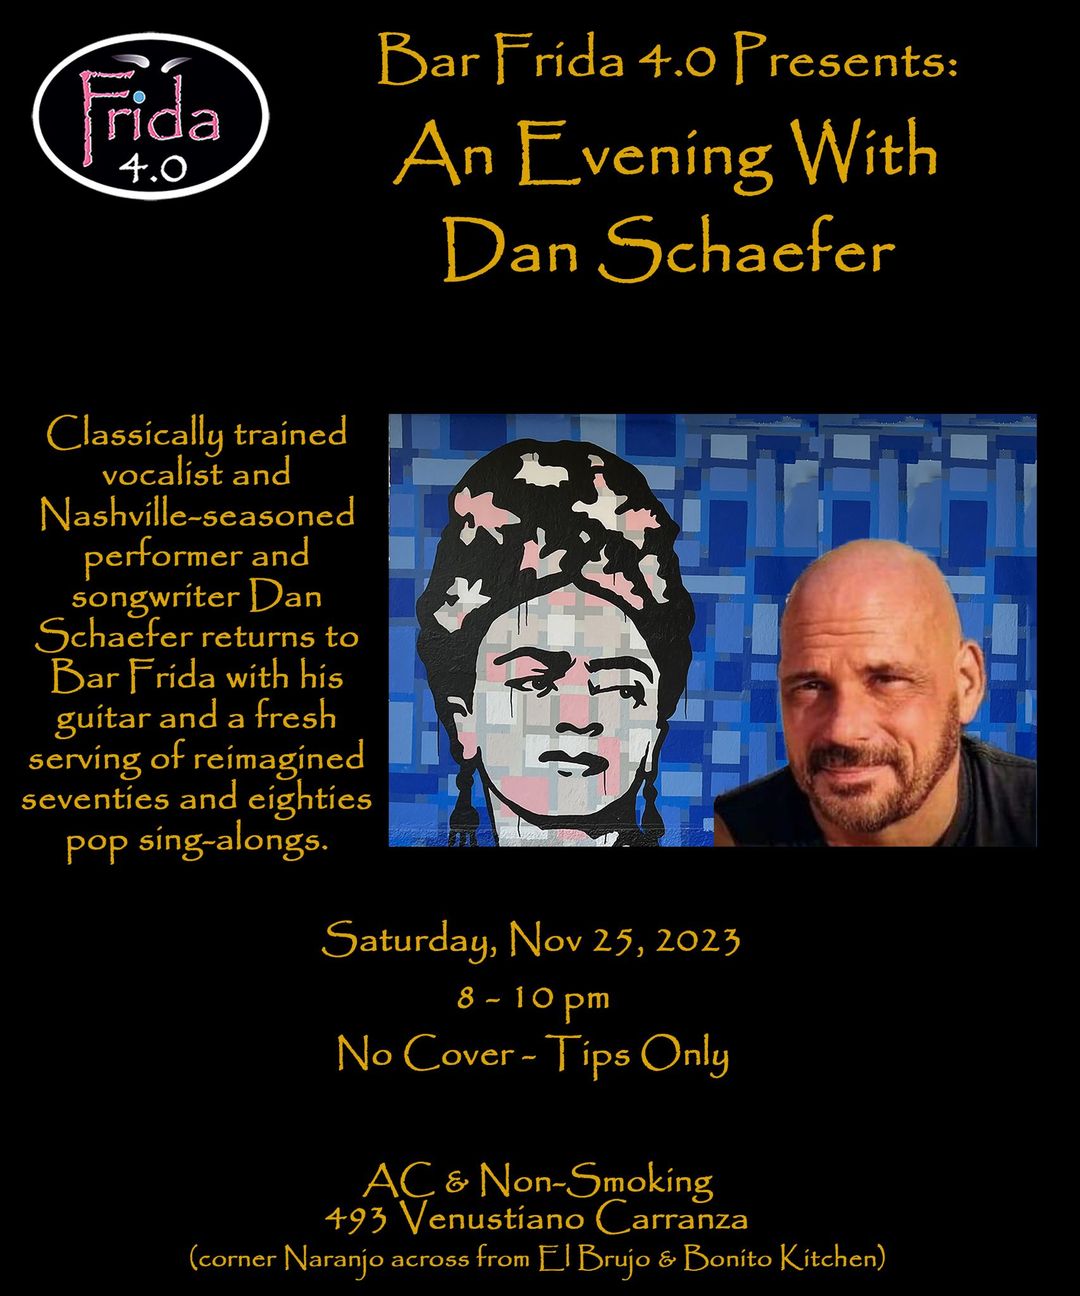 An Evening With Dan Shaefer